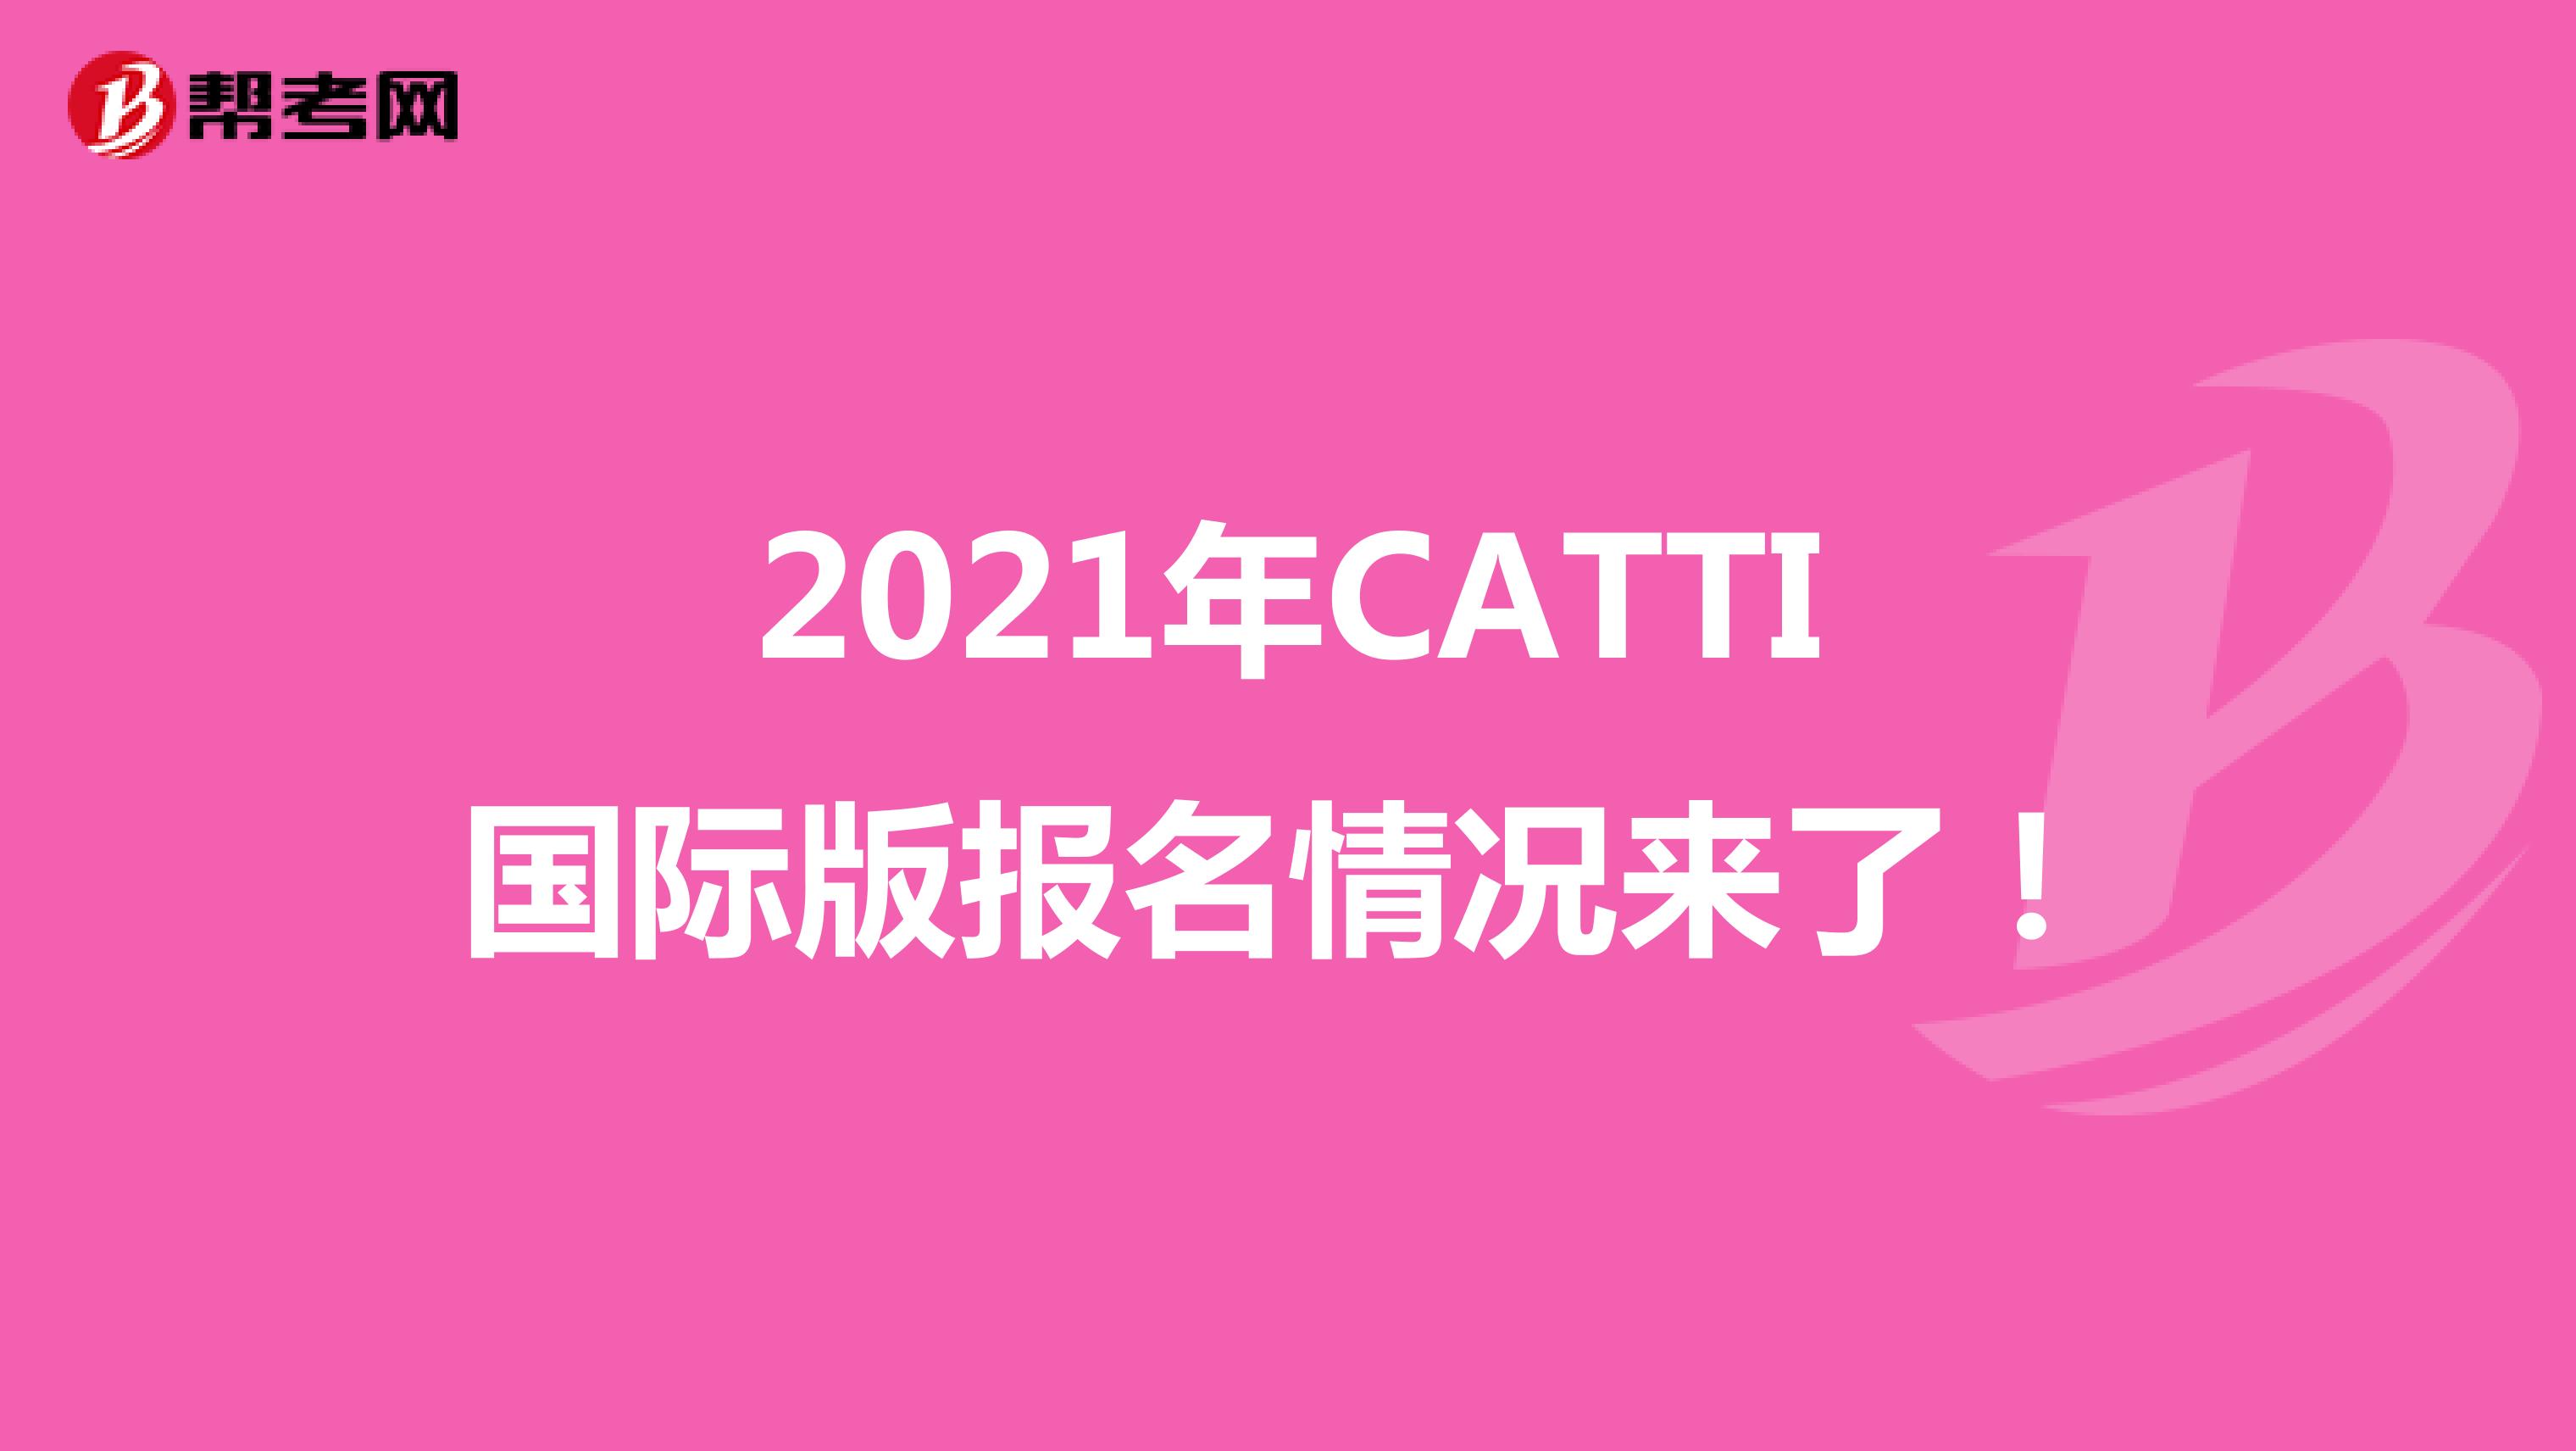 2021年CATTI国际版报名情况来了！